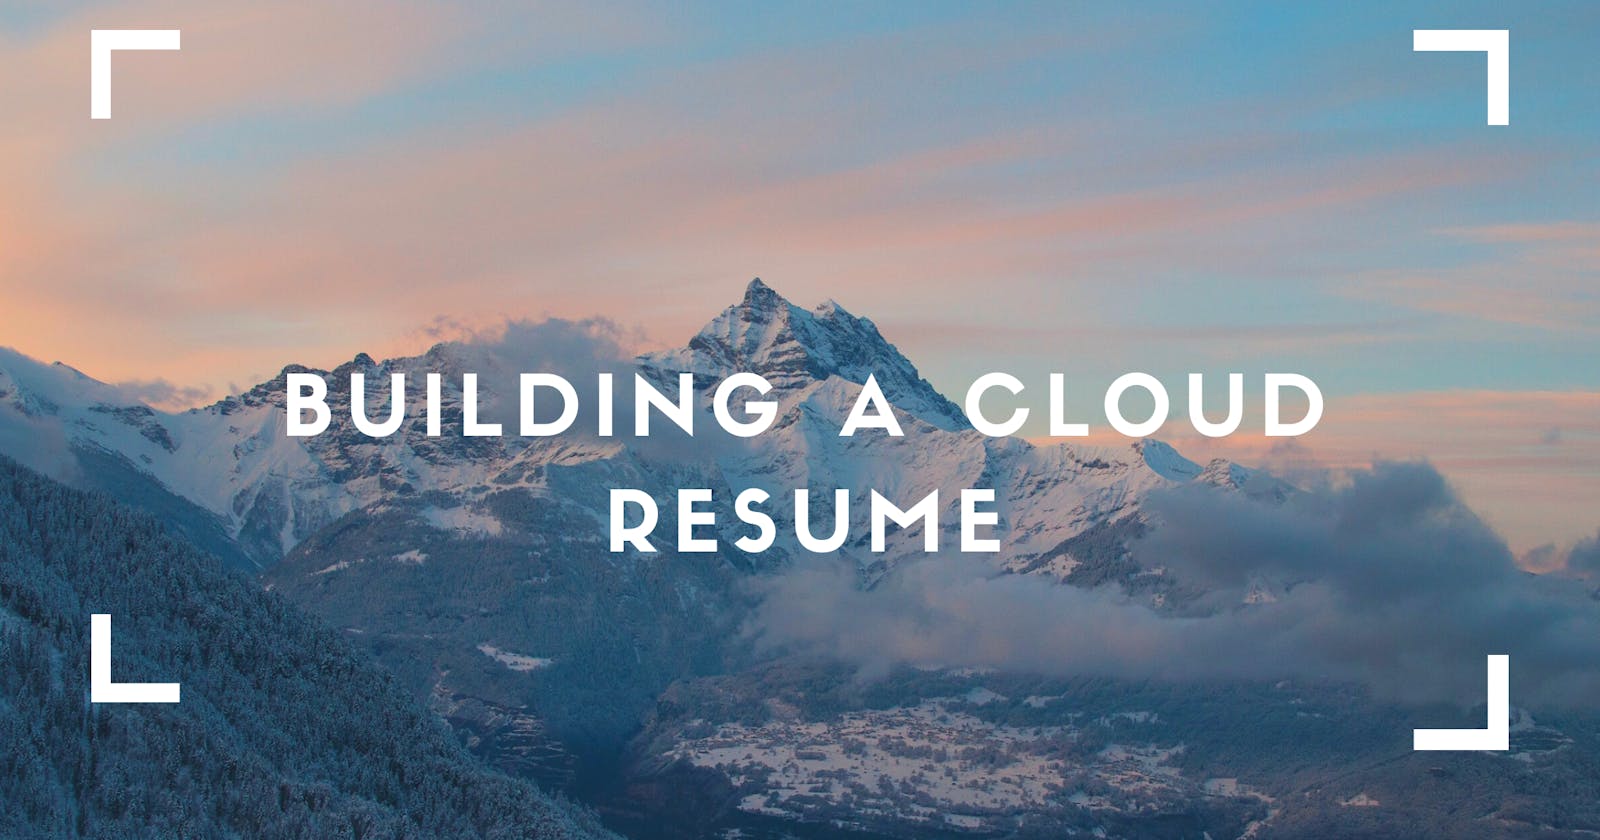 Cloud Resume Challenge